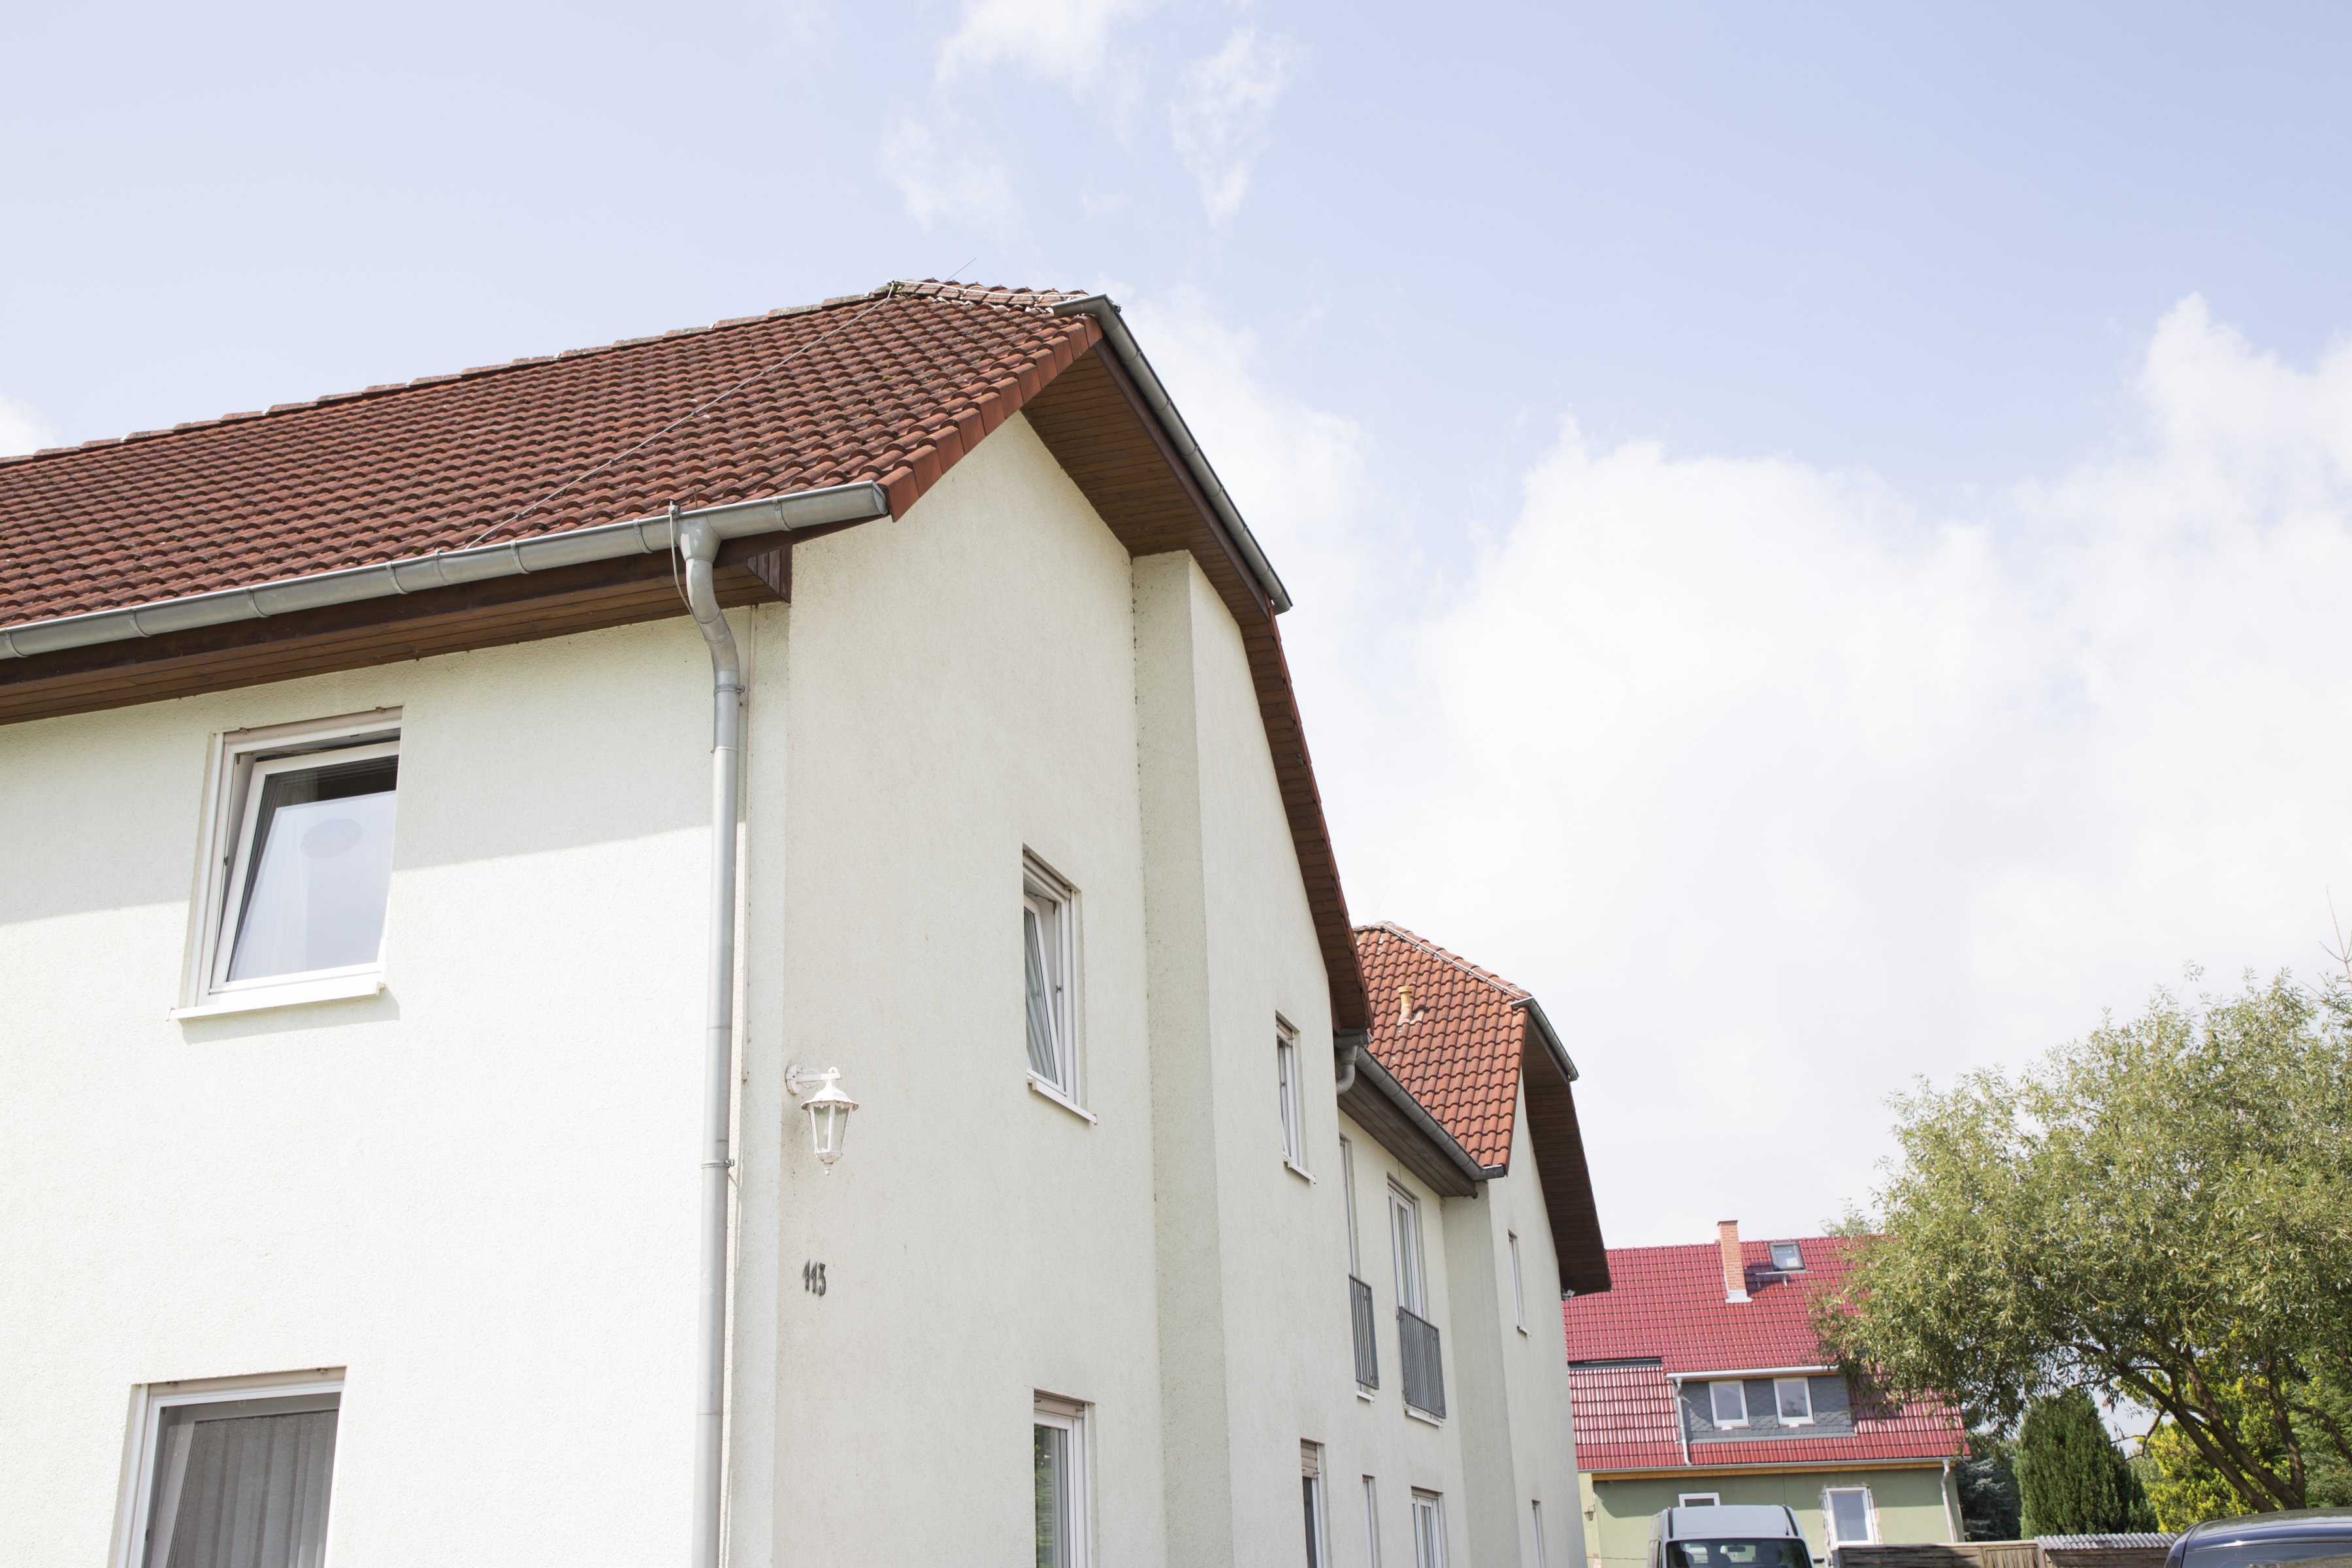 Bild 5 Alten- u. Pflegeheim "Haus Mose" in Schmalkalden